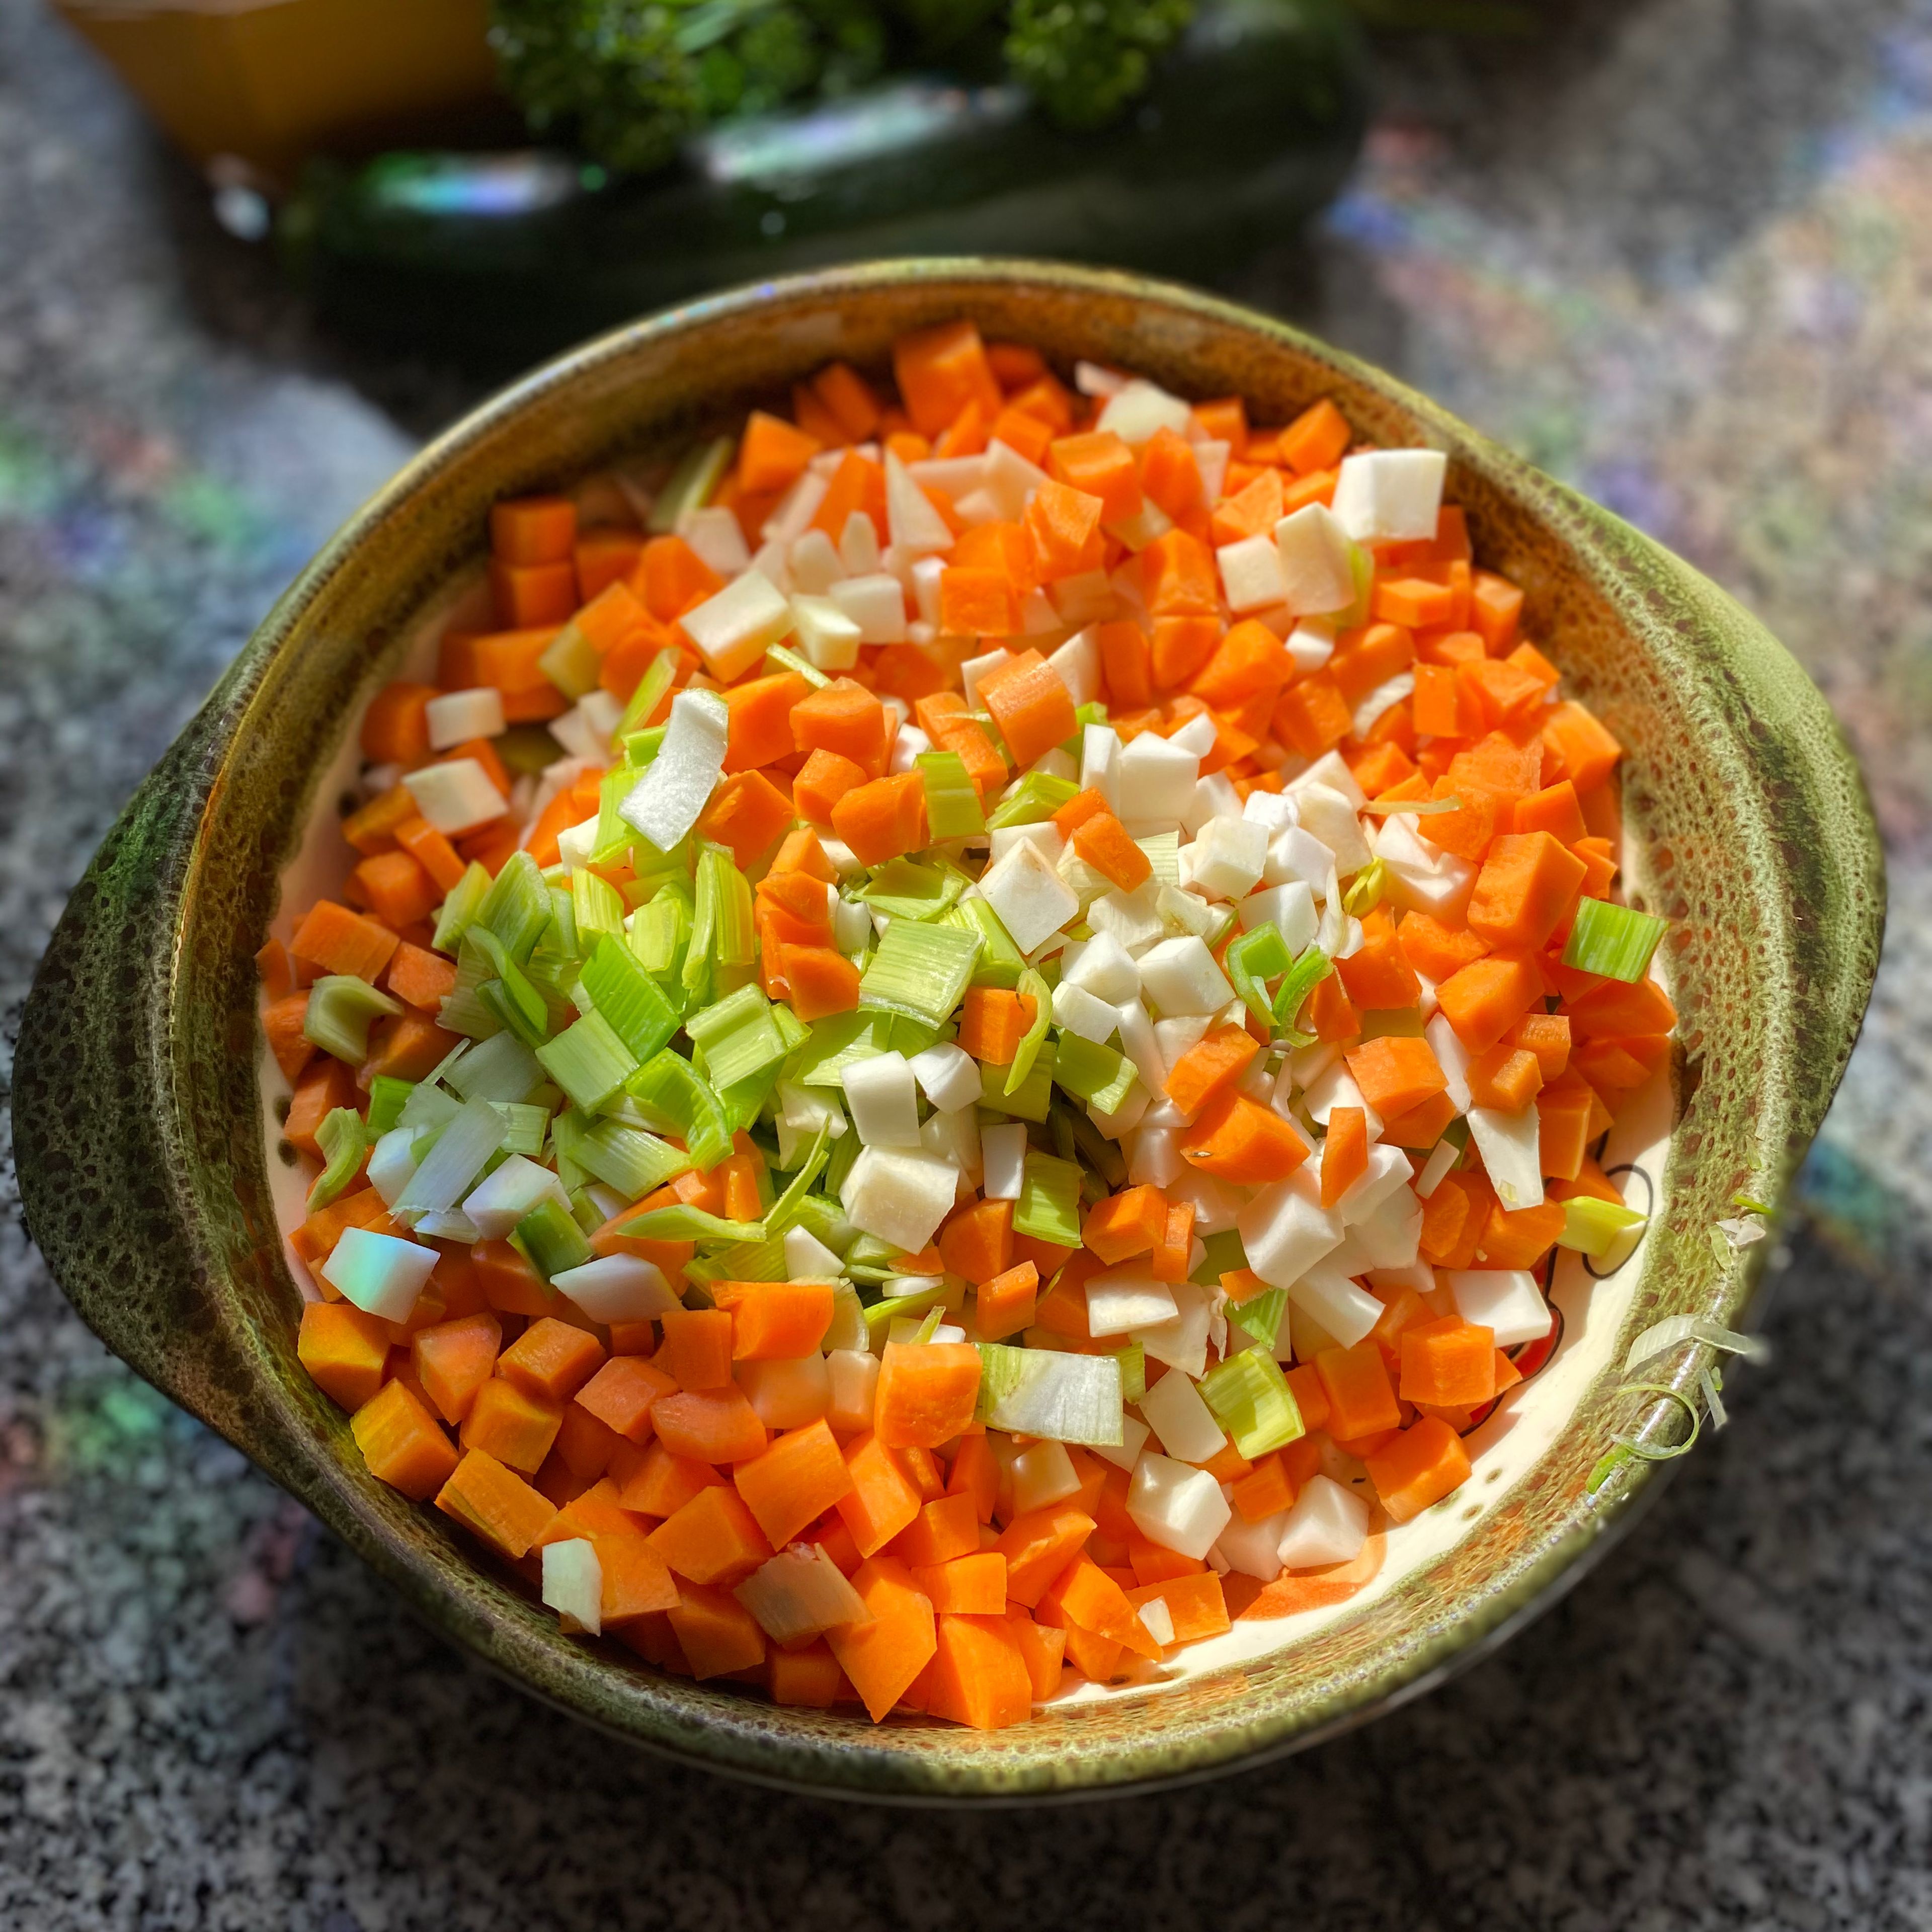 Als erstes schneidet man das komplette Gemüse in kleine Würfel. Das Suppengrün (Karotte, Sellerie, Lauch) separat beiseite stellen.